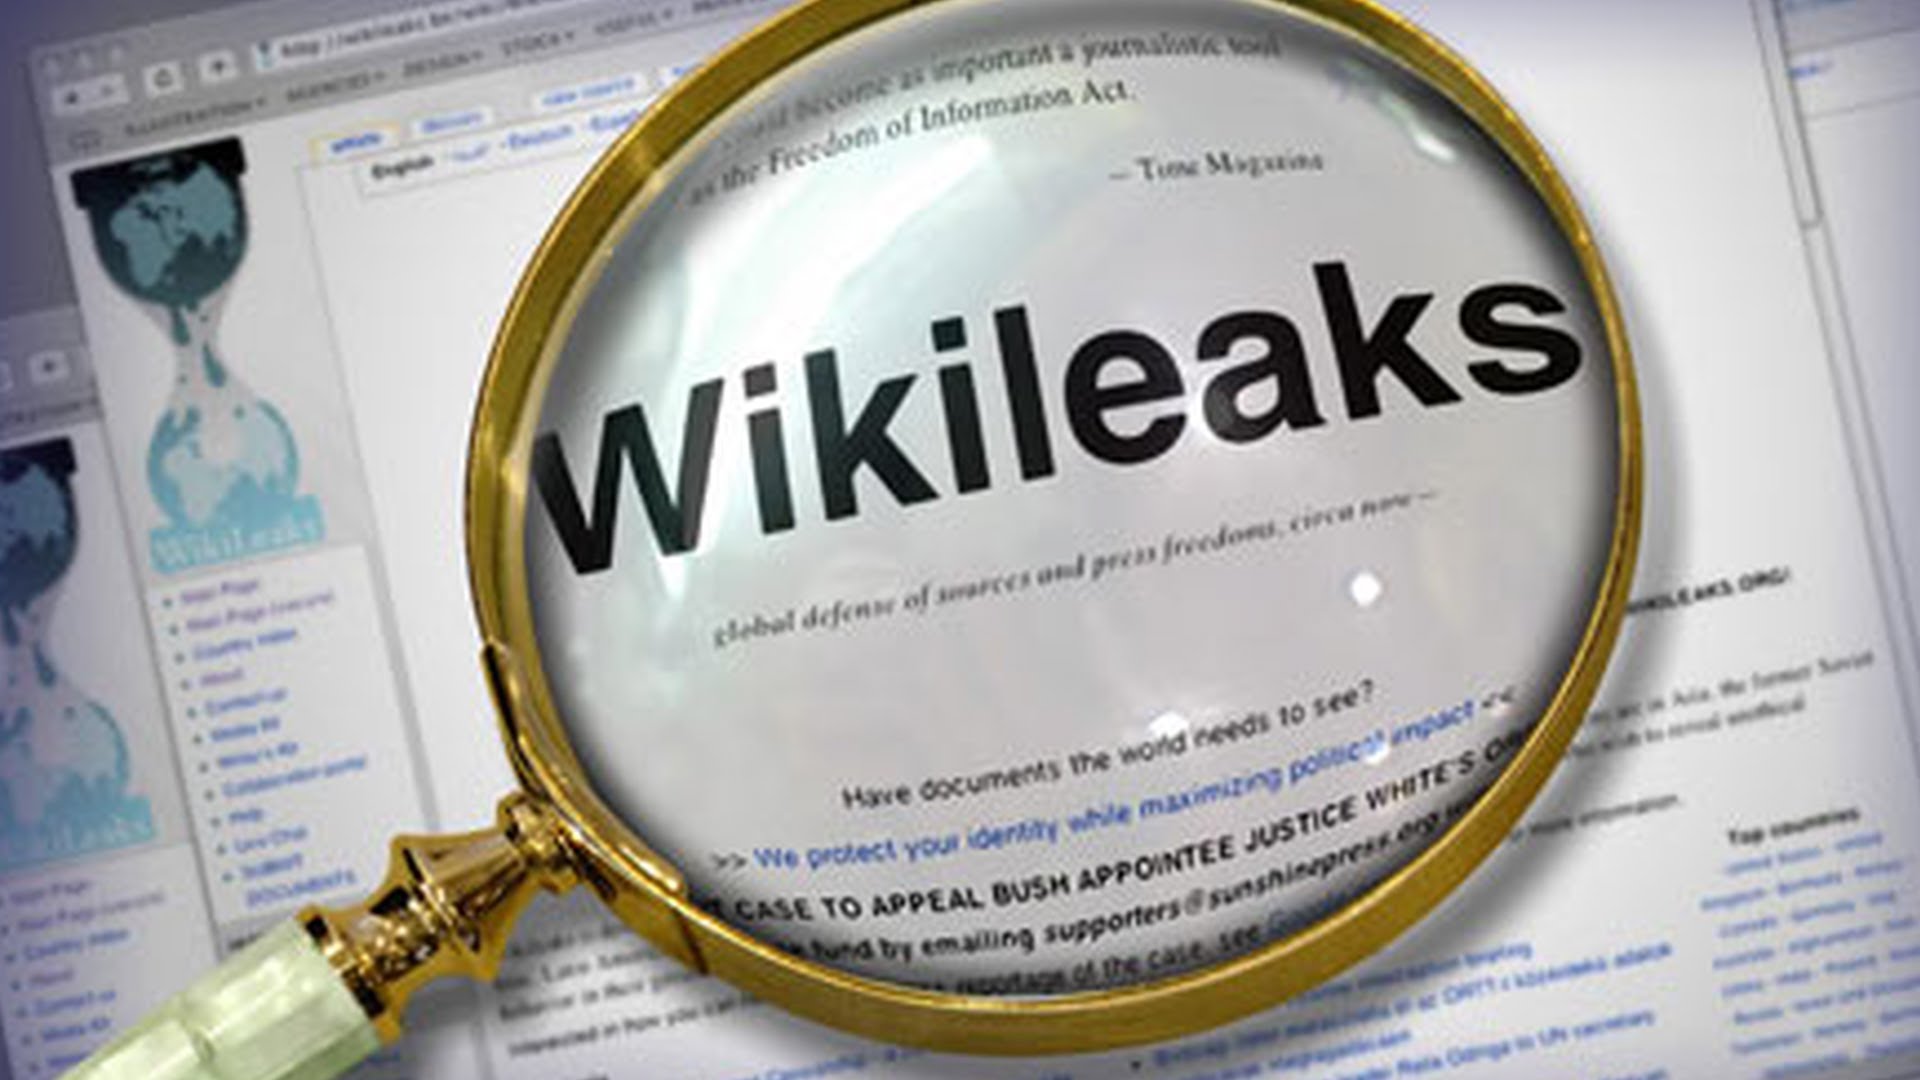 Wikileaks, ABD siyasi çerçevelerinin, Ermeni Soykırımı konulu e-postalarını yayınladı